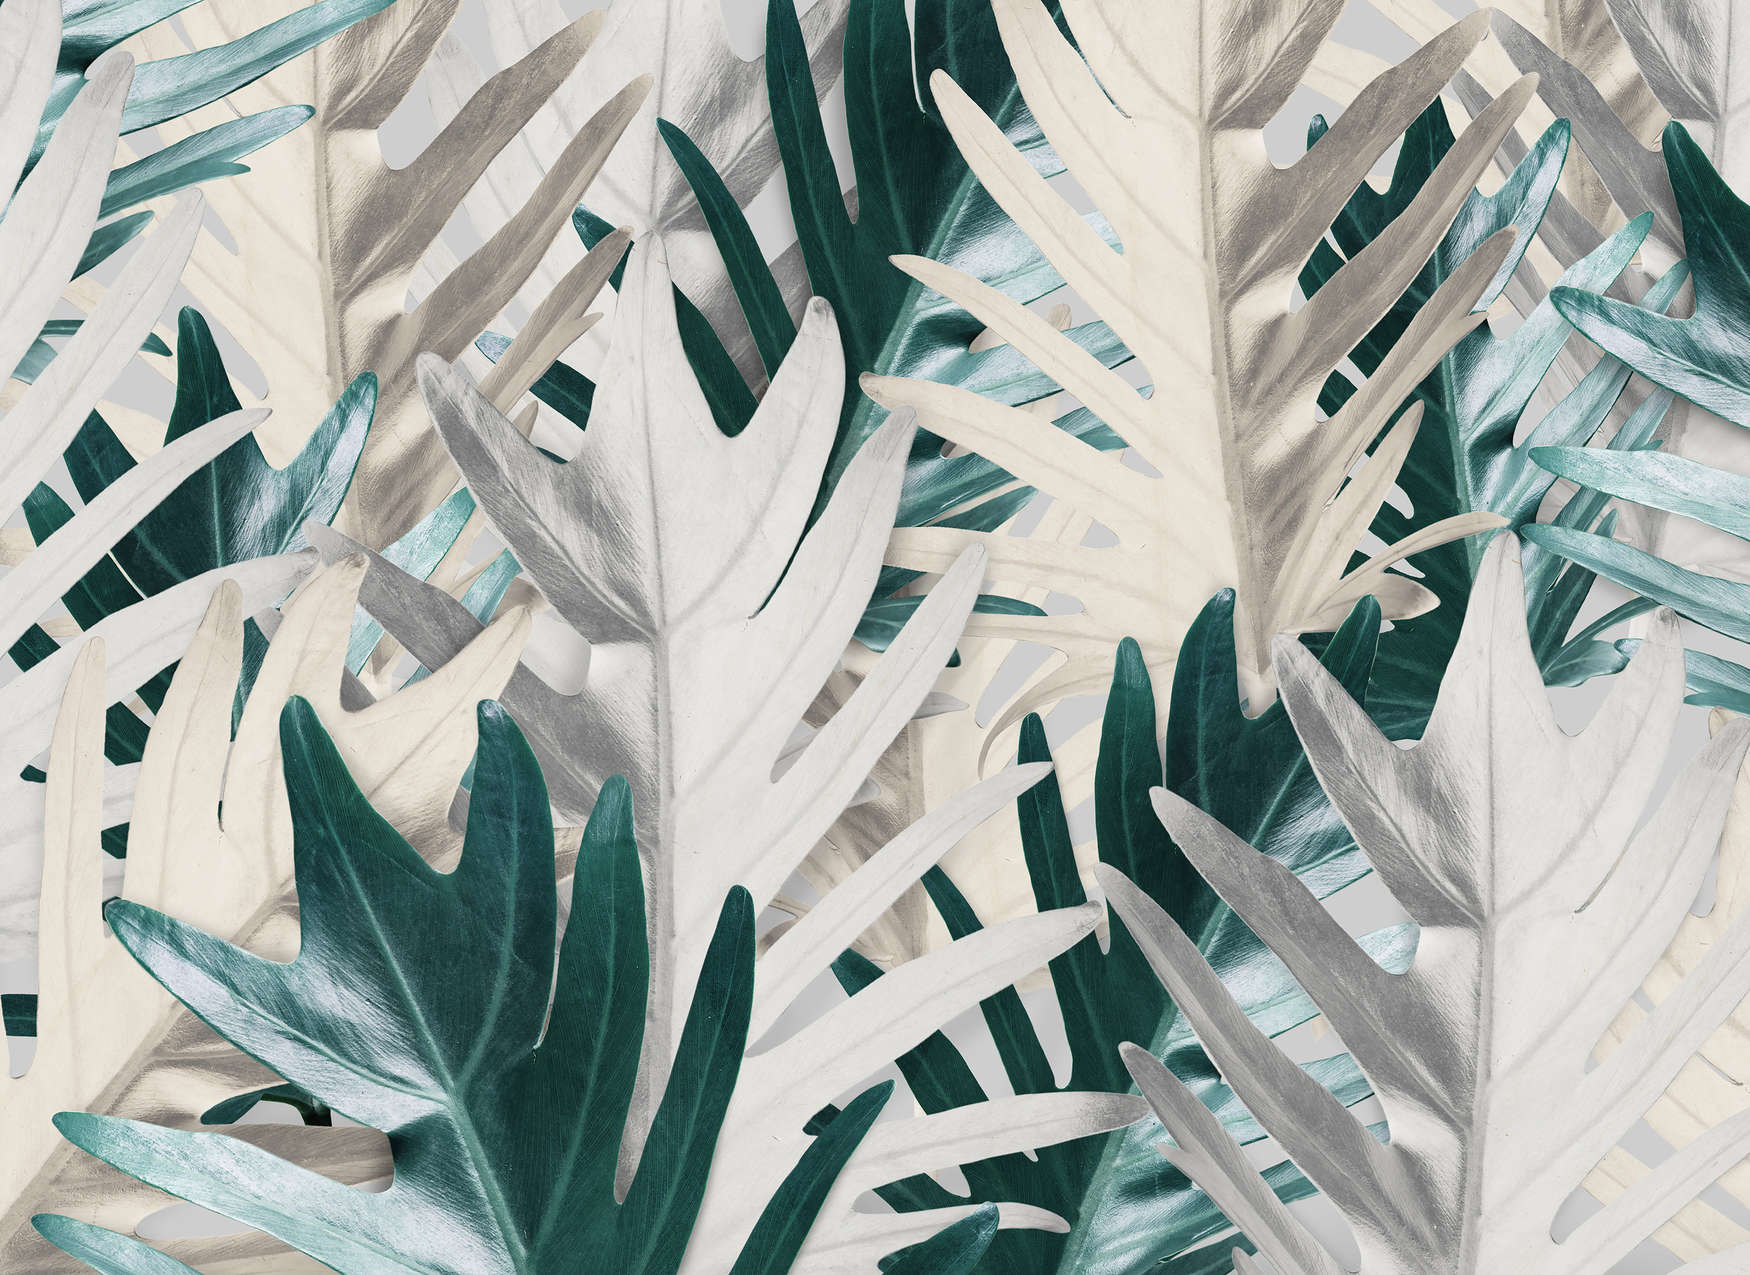             Tropical Palm Leaves Onderlaag behang - Groen, Wit
        